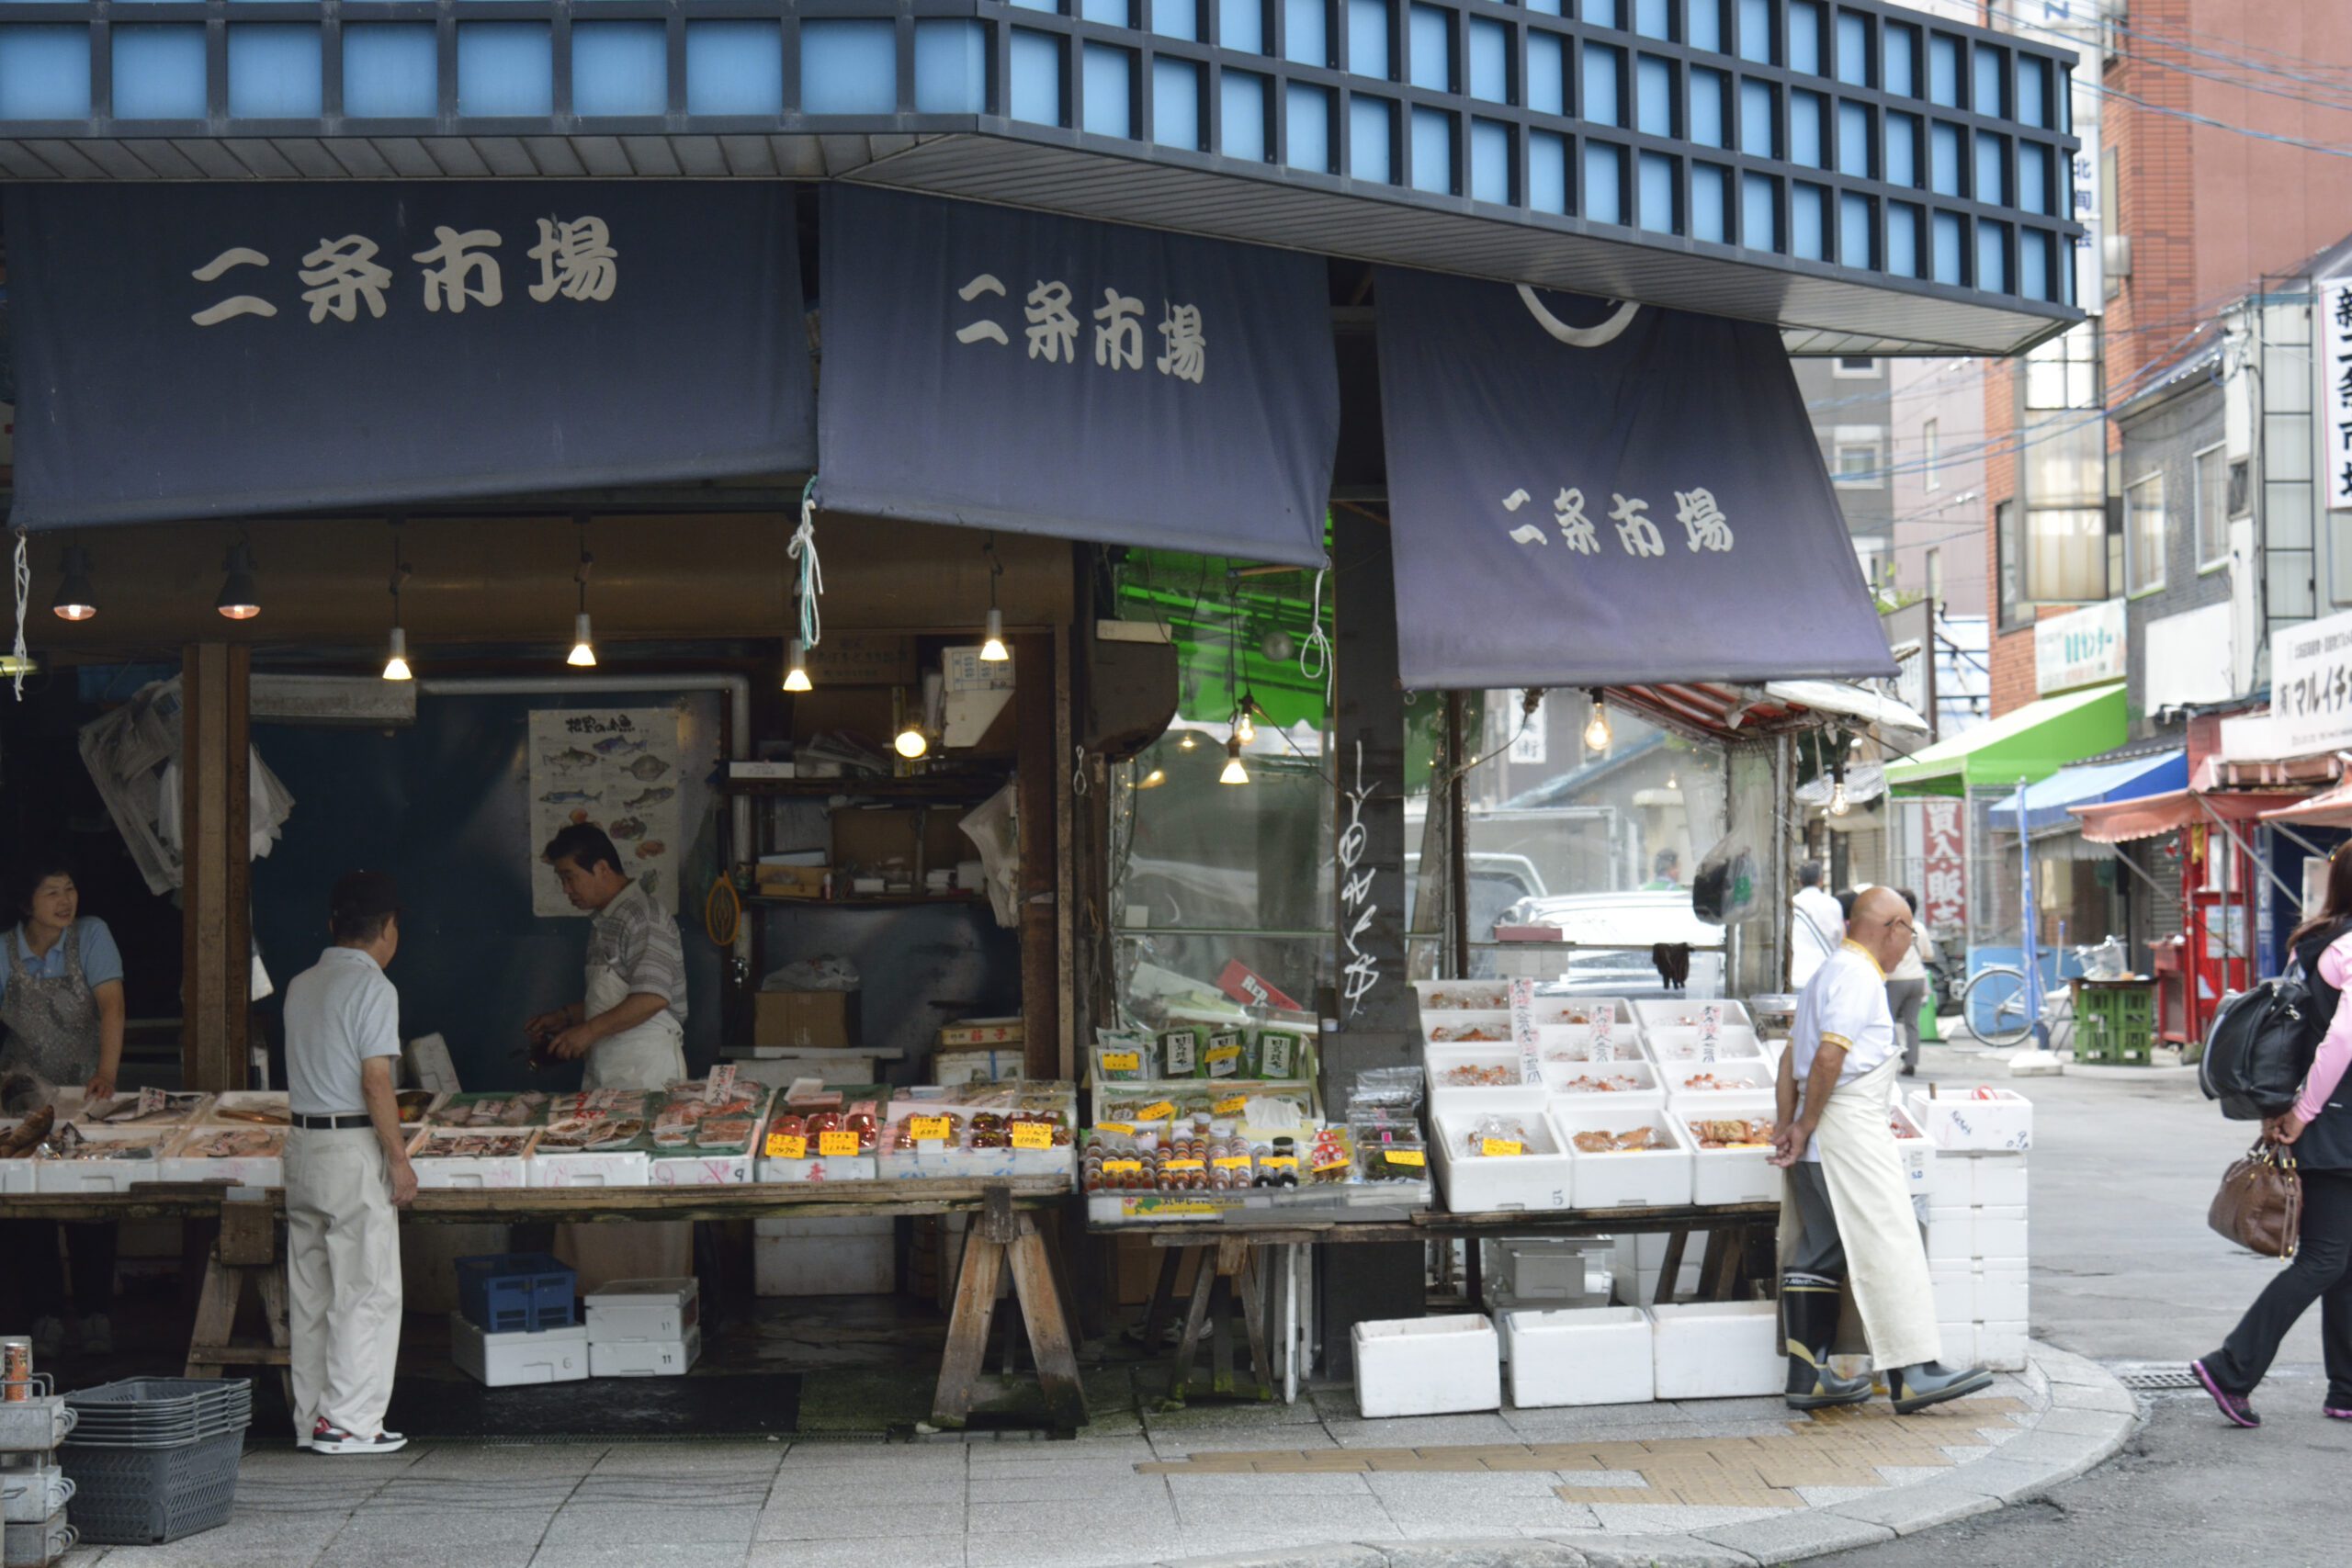 札幌の旅行の夏の人気スポット30選　10位:二条市場